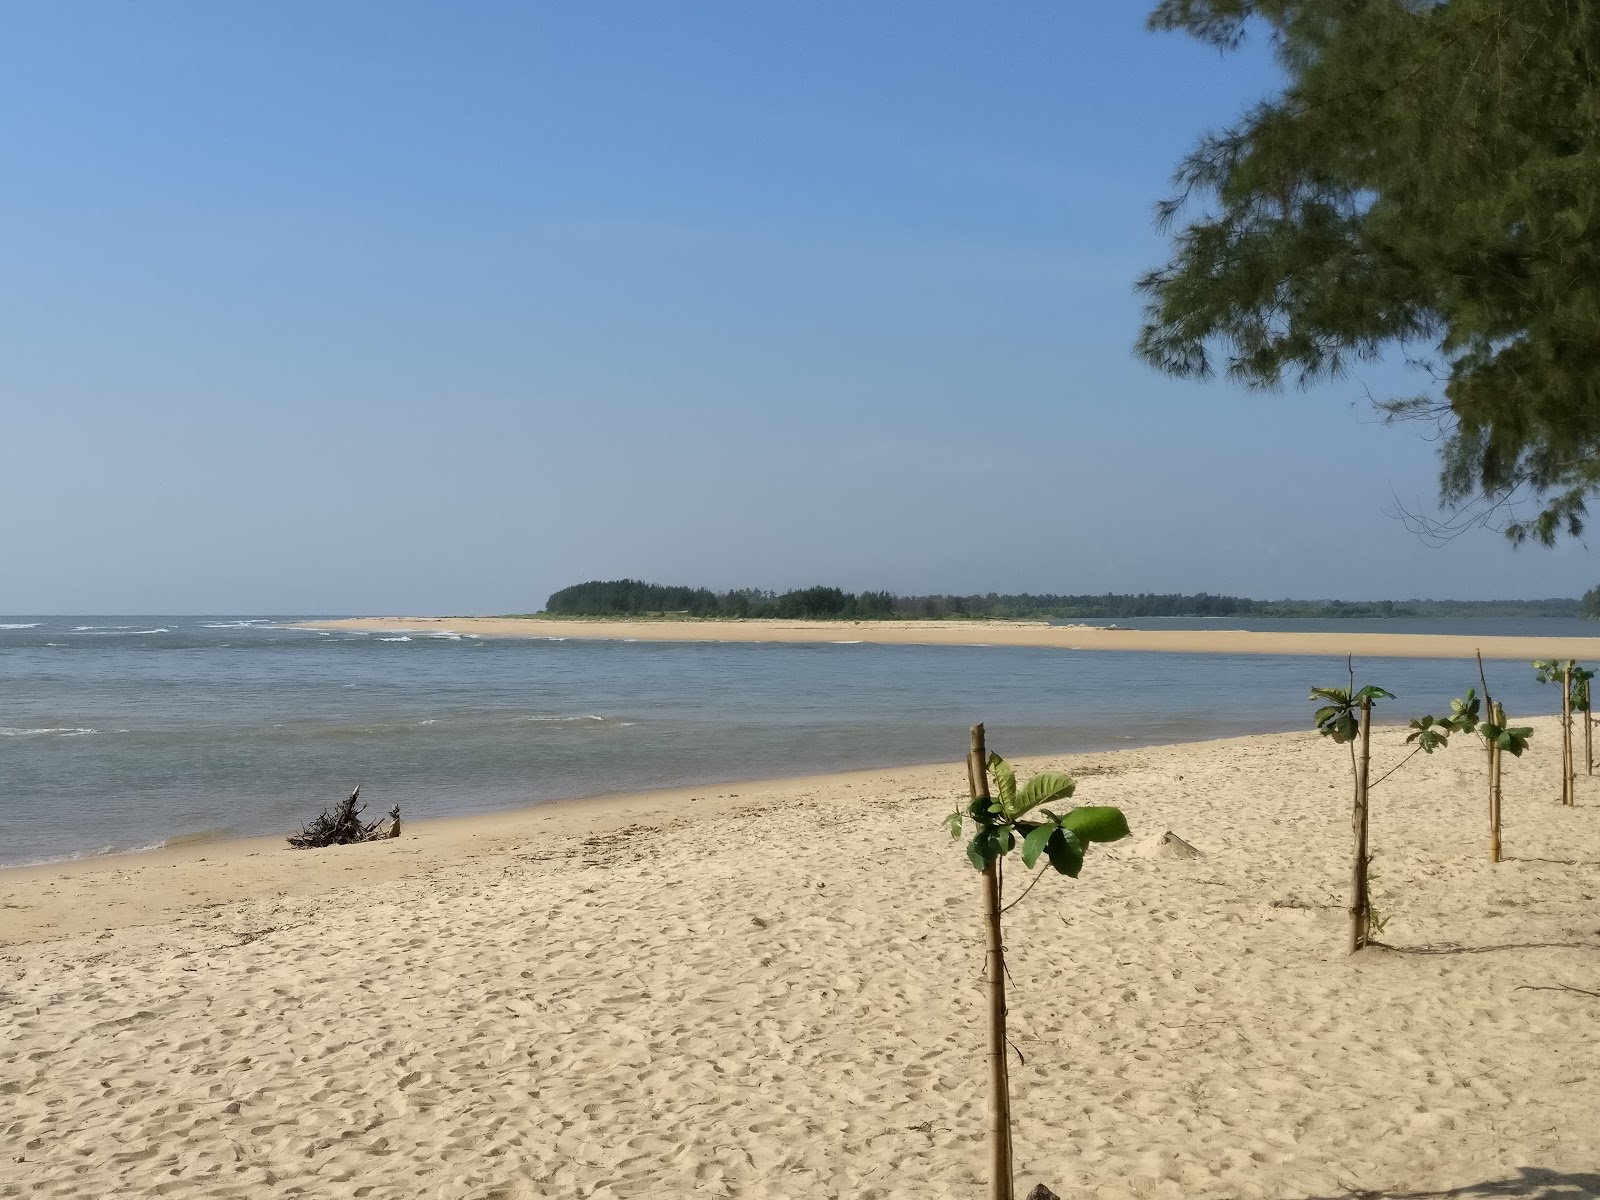 Photo de Sasihitlu beach - endroit populaire parmi les connaisseurs de la détente